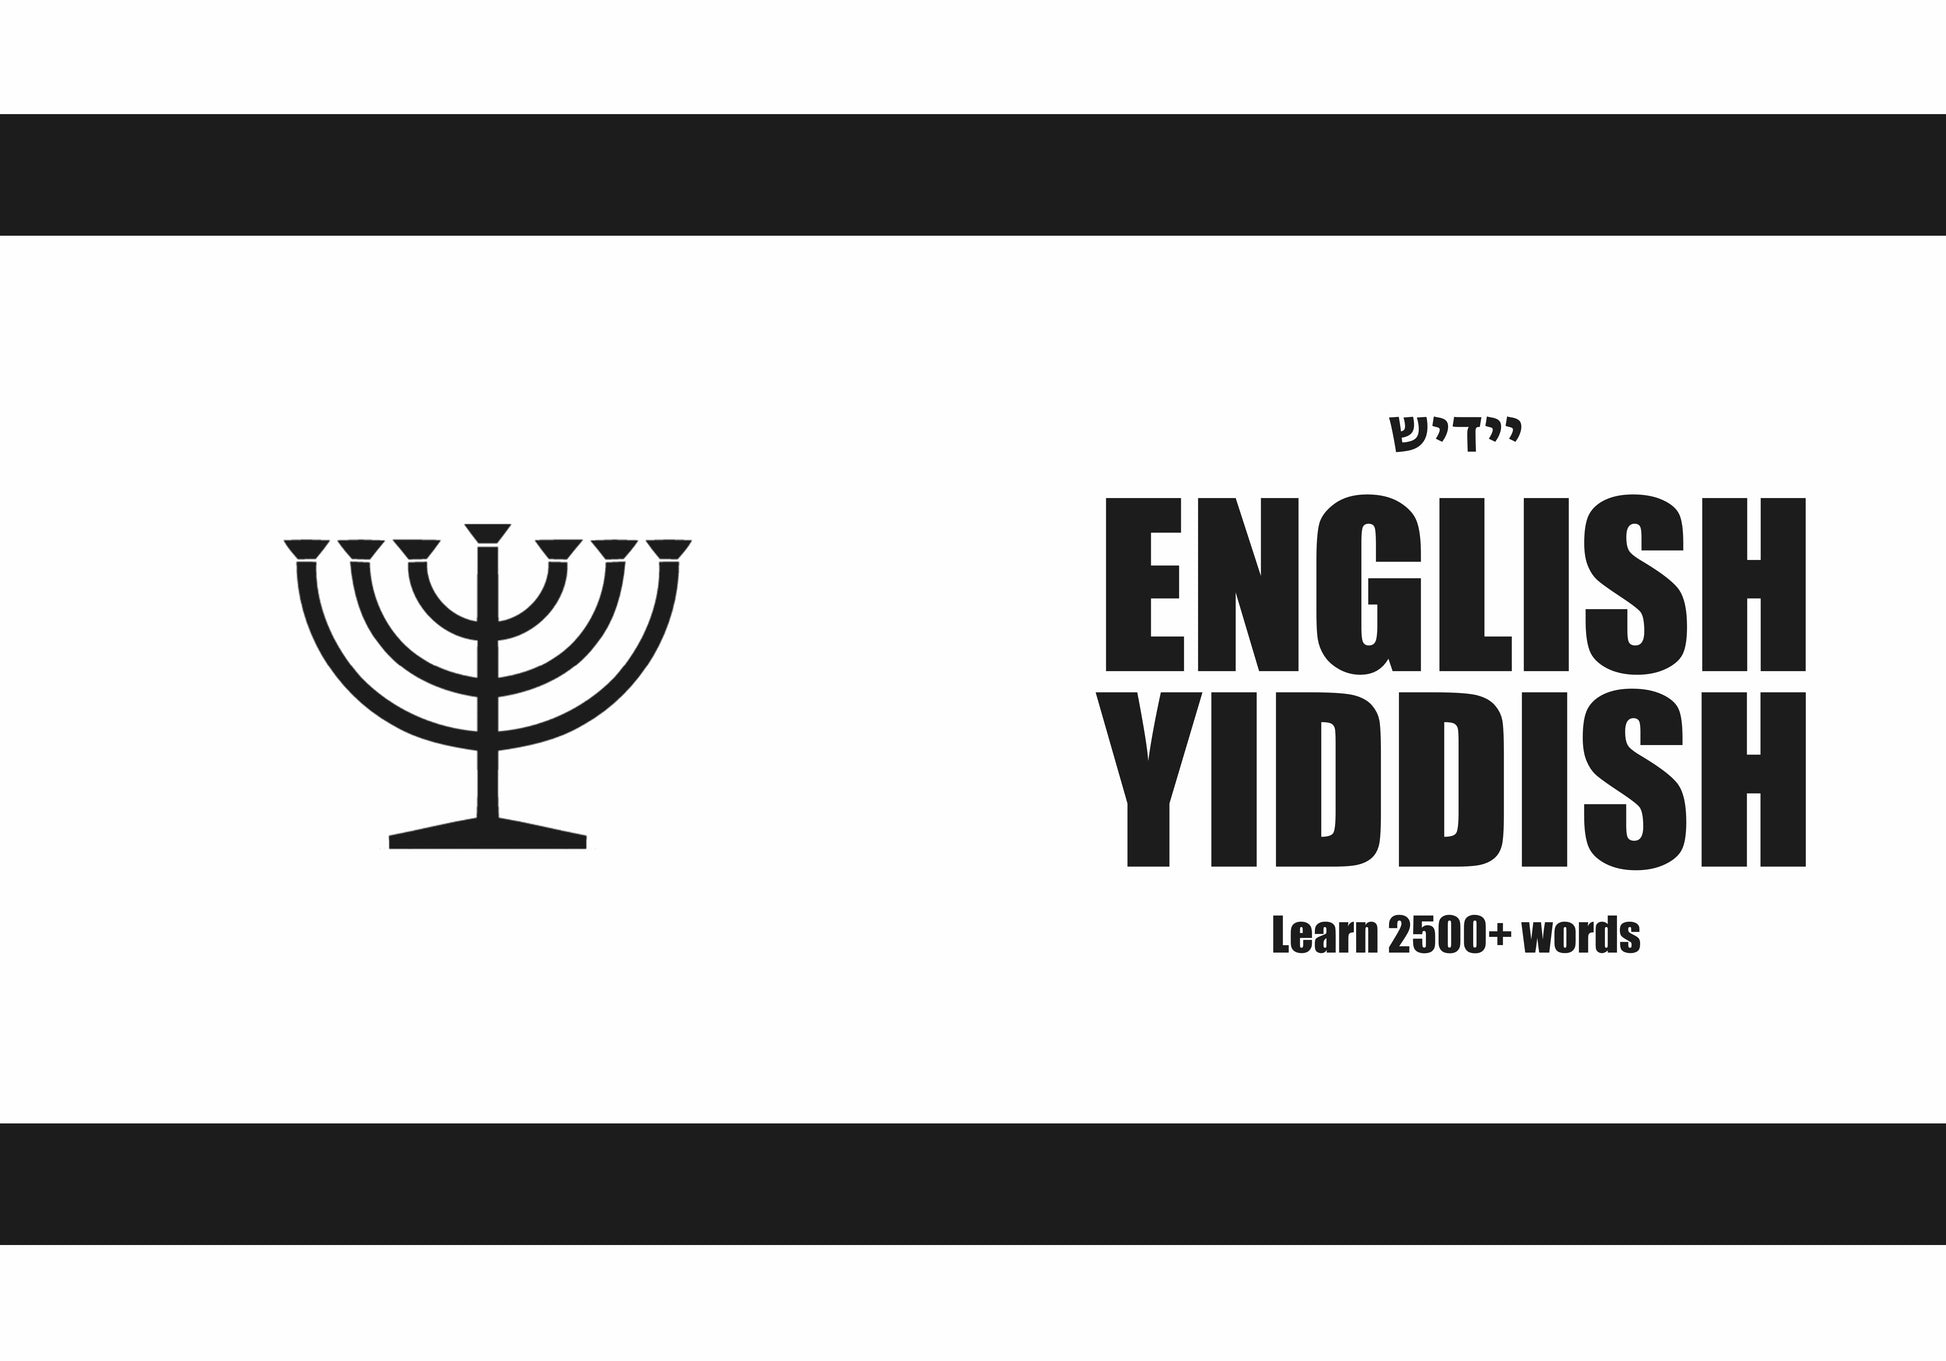 Yiddish language learning notebook cover